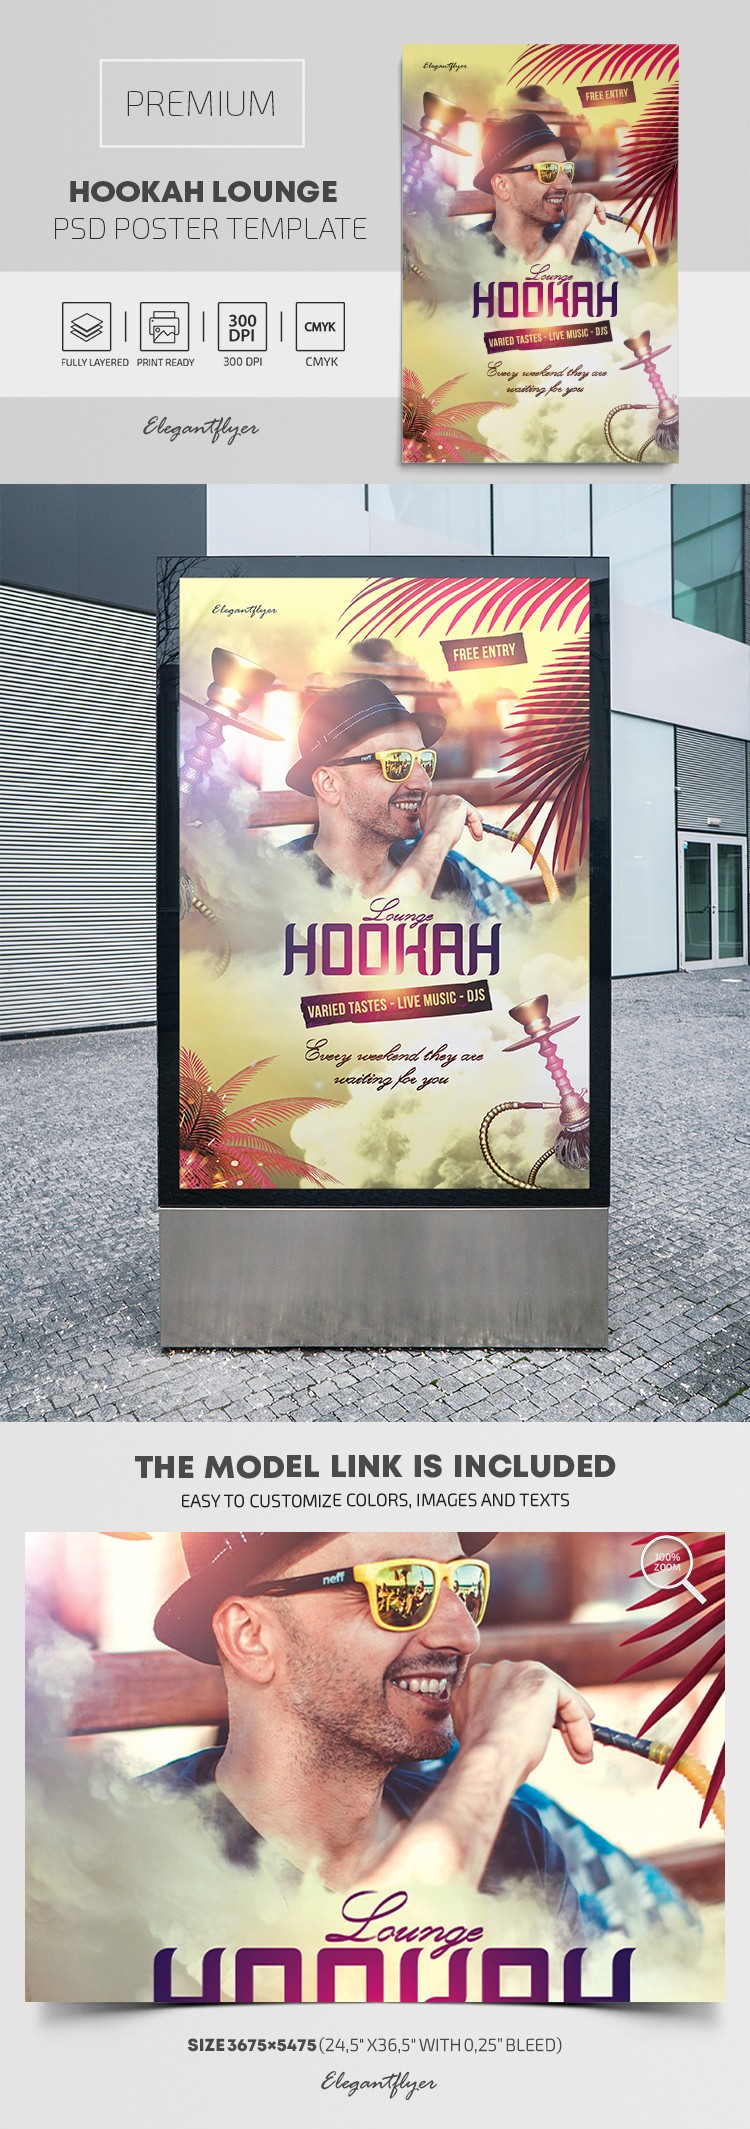 Hookah Lounge Poster

Hookah Lounge Poster by ElegantFlyer